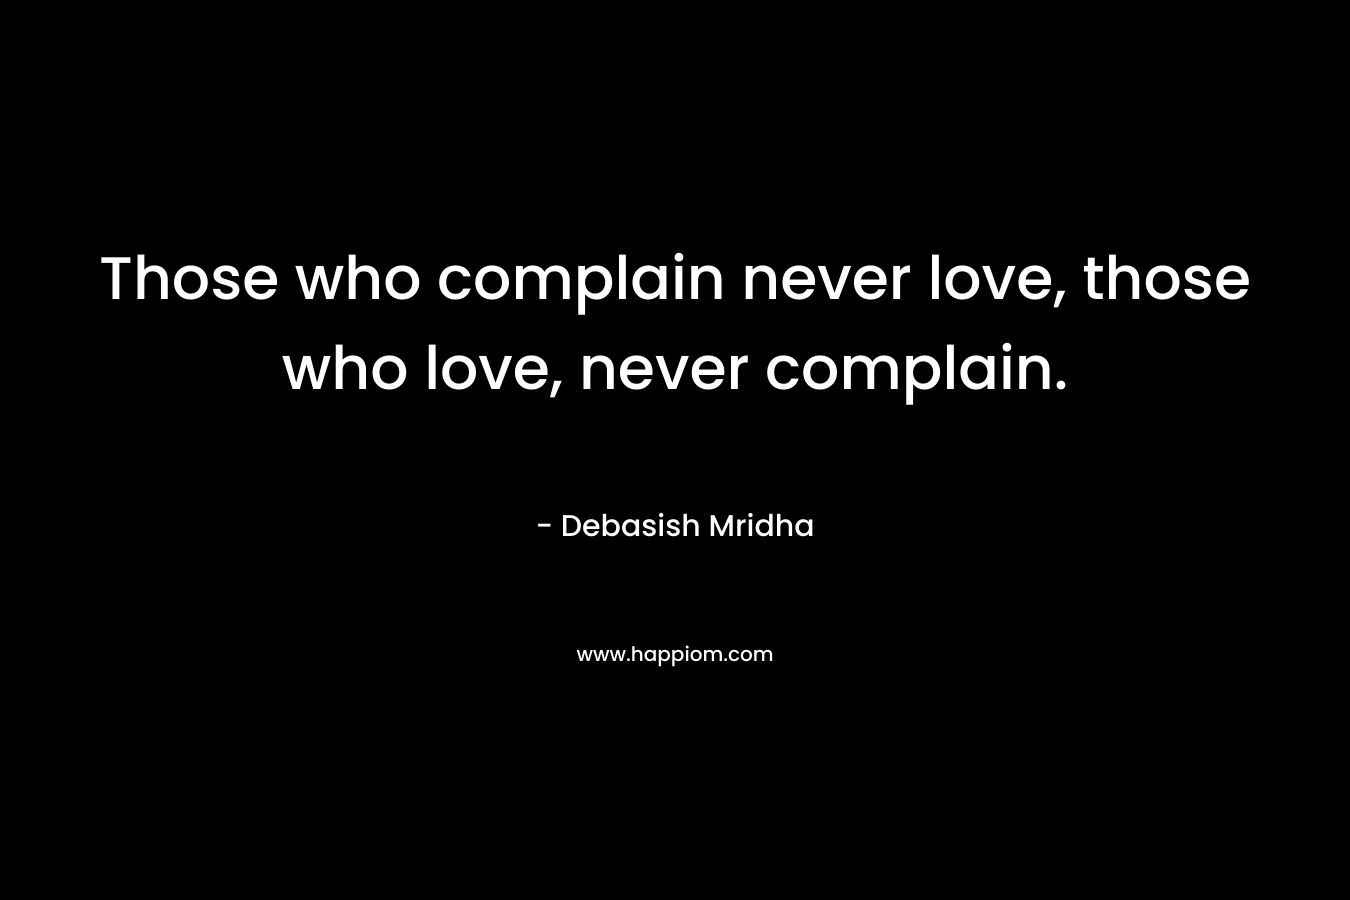 Those who complain never love, those who love, never complain.